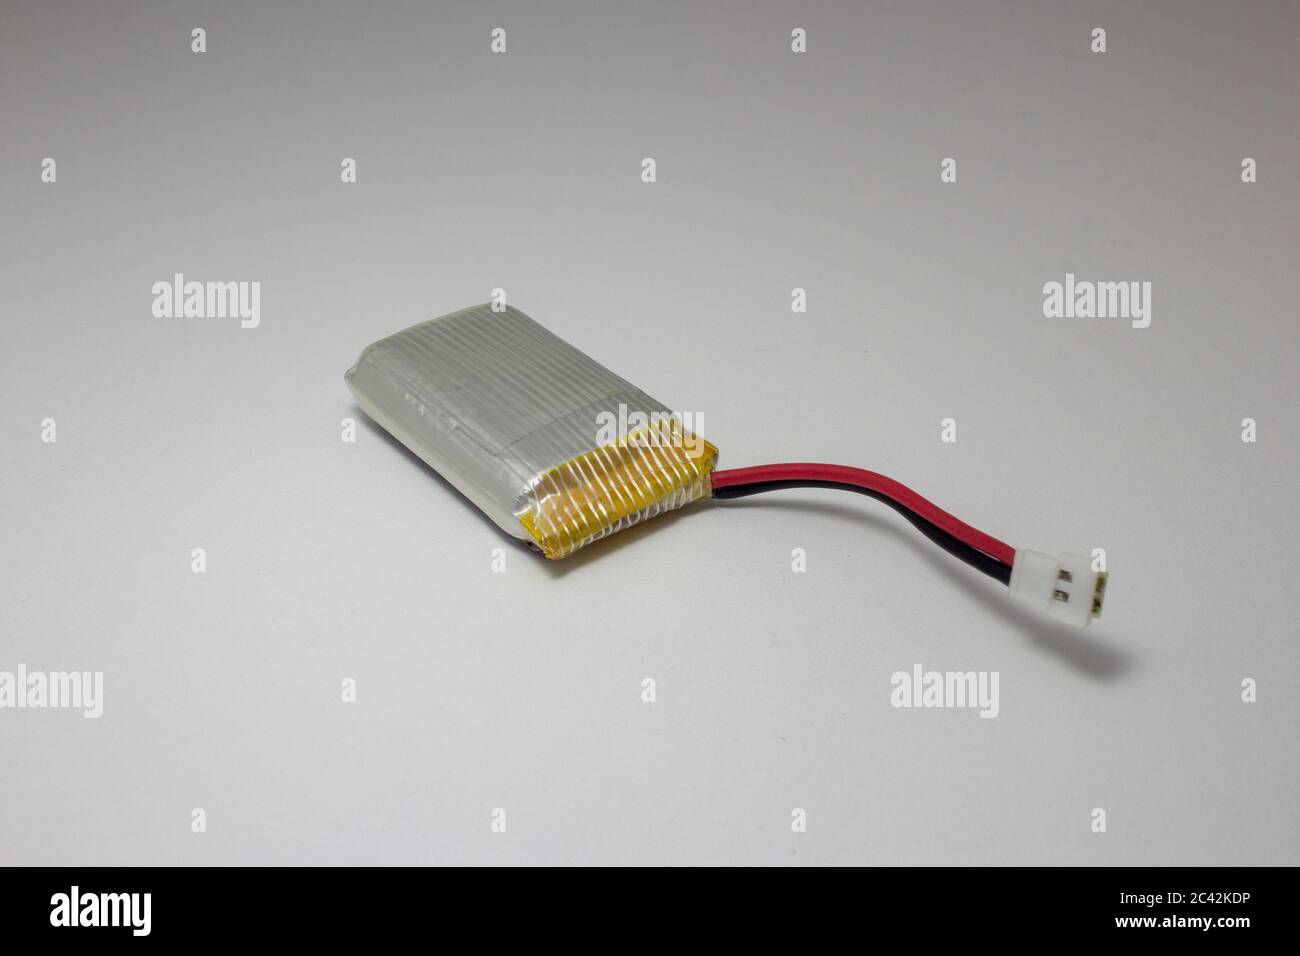 Batteria lipo immagini e fotografie stock ad alta risoluzione - Alamy